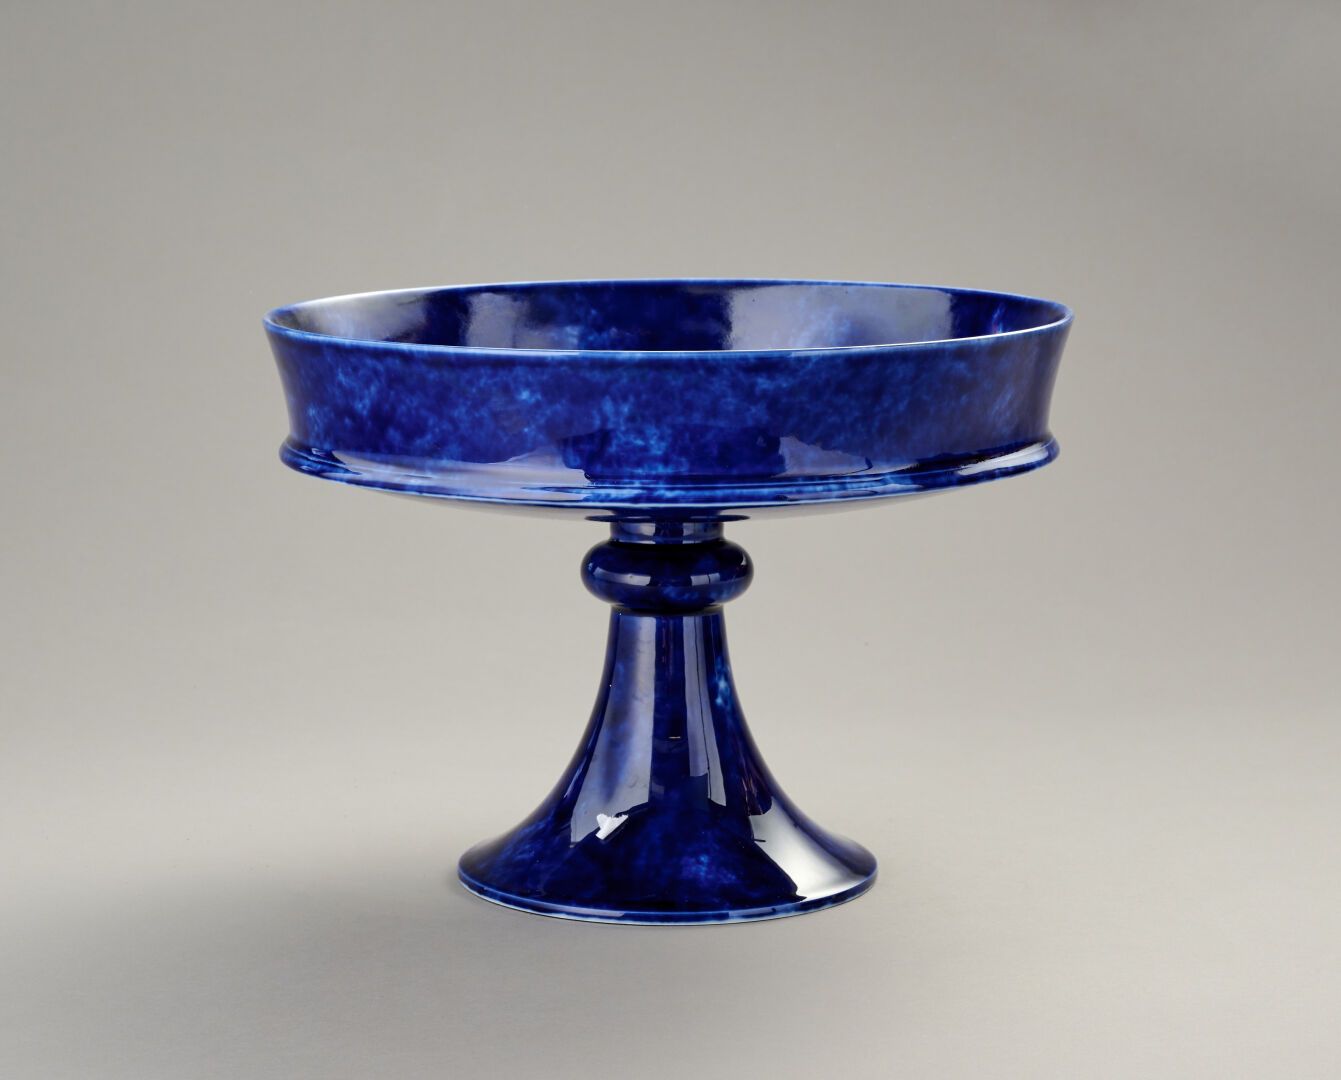 Null ǞǞǞ

粉蓝瓷碗。

日期为1892年

直径：34厘米，高：24厘米